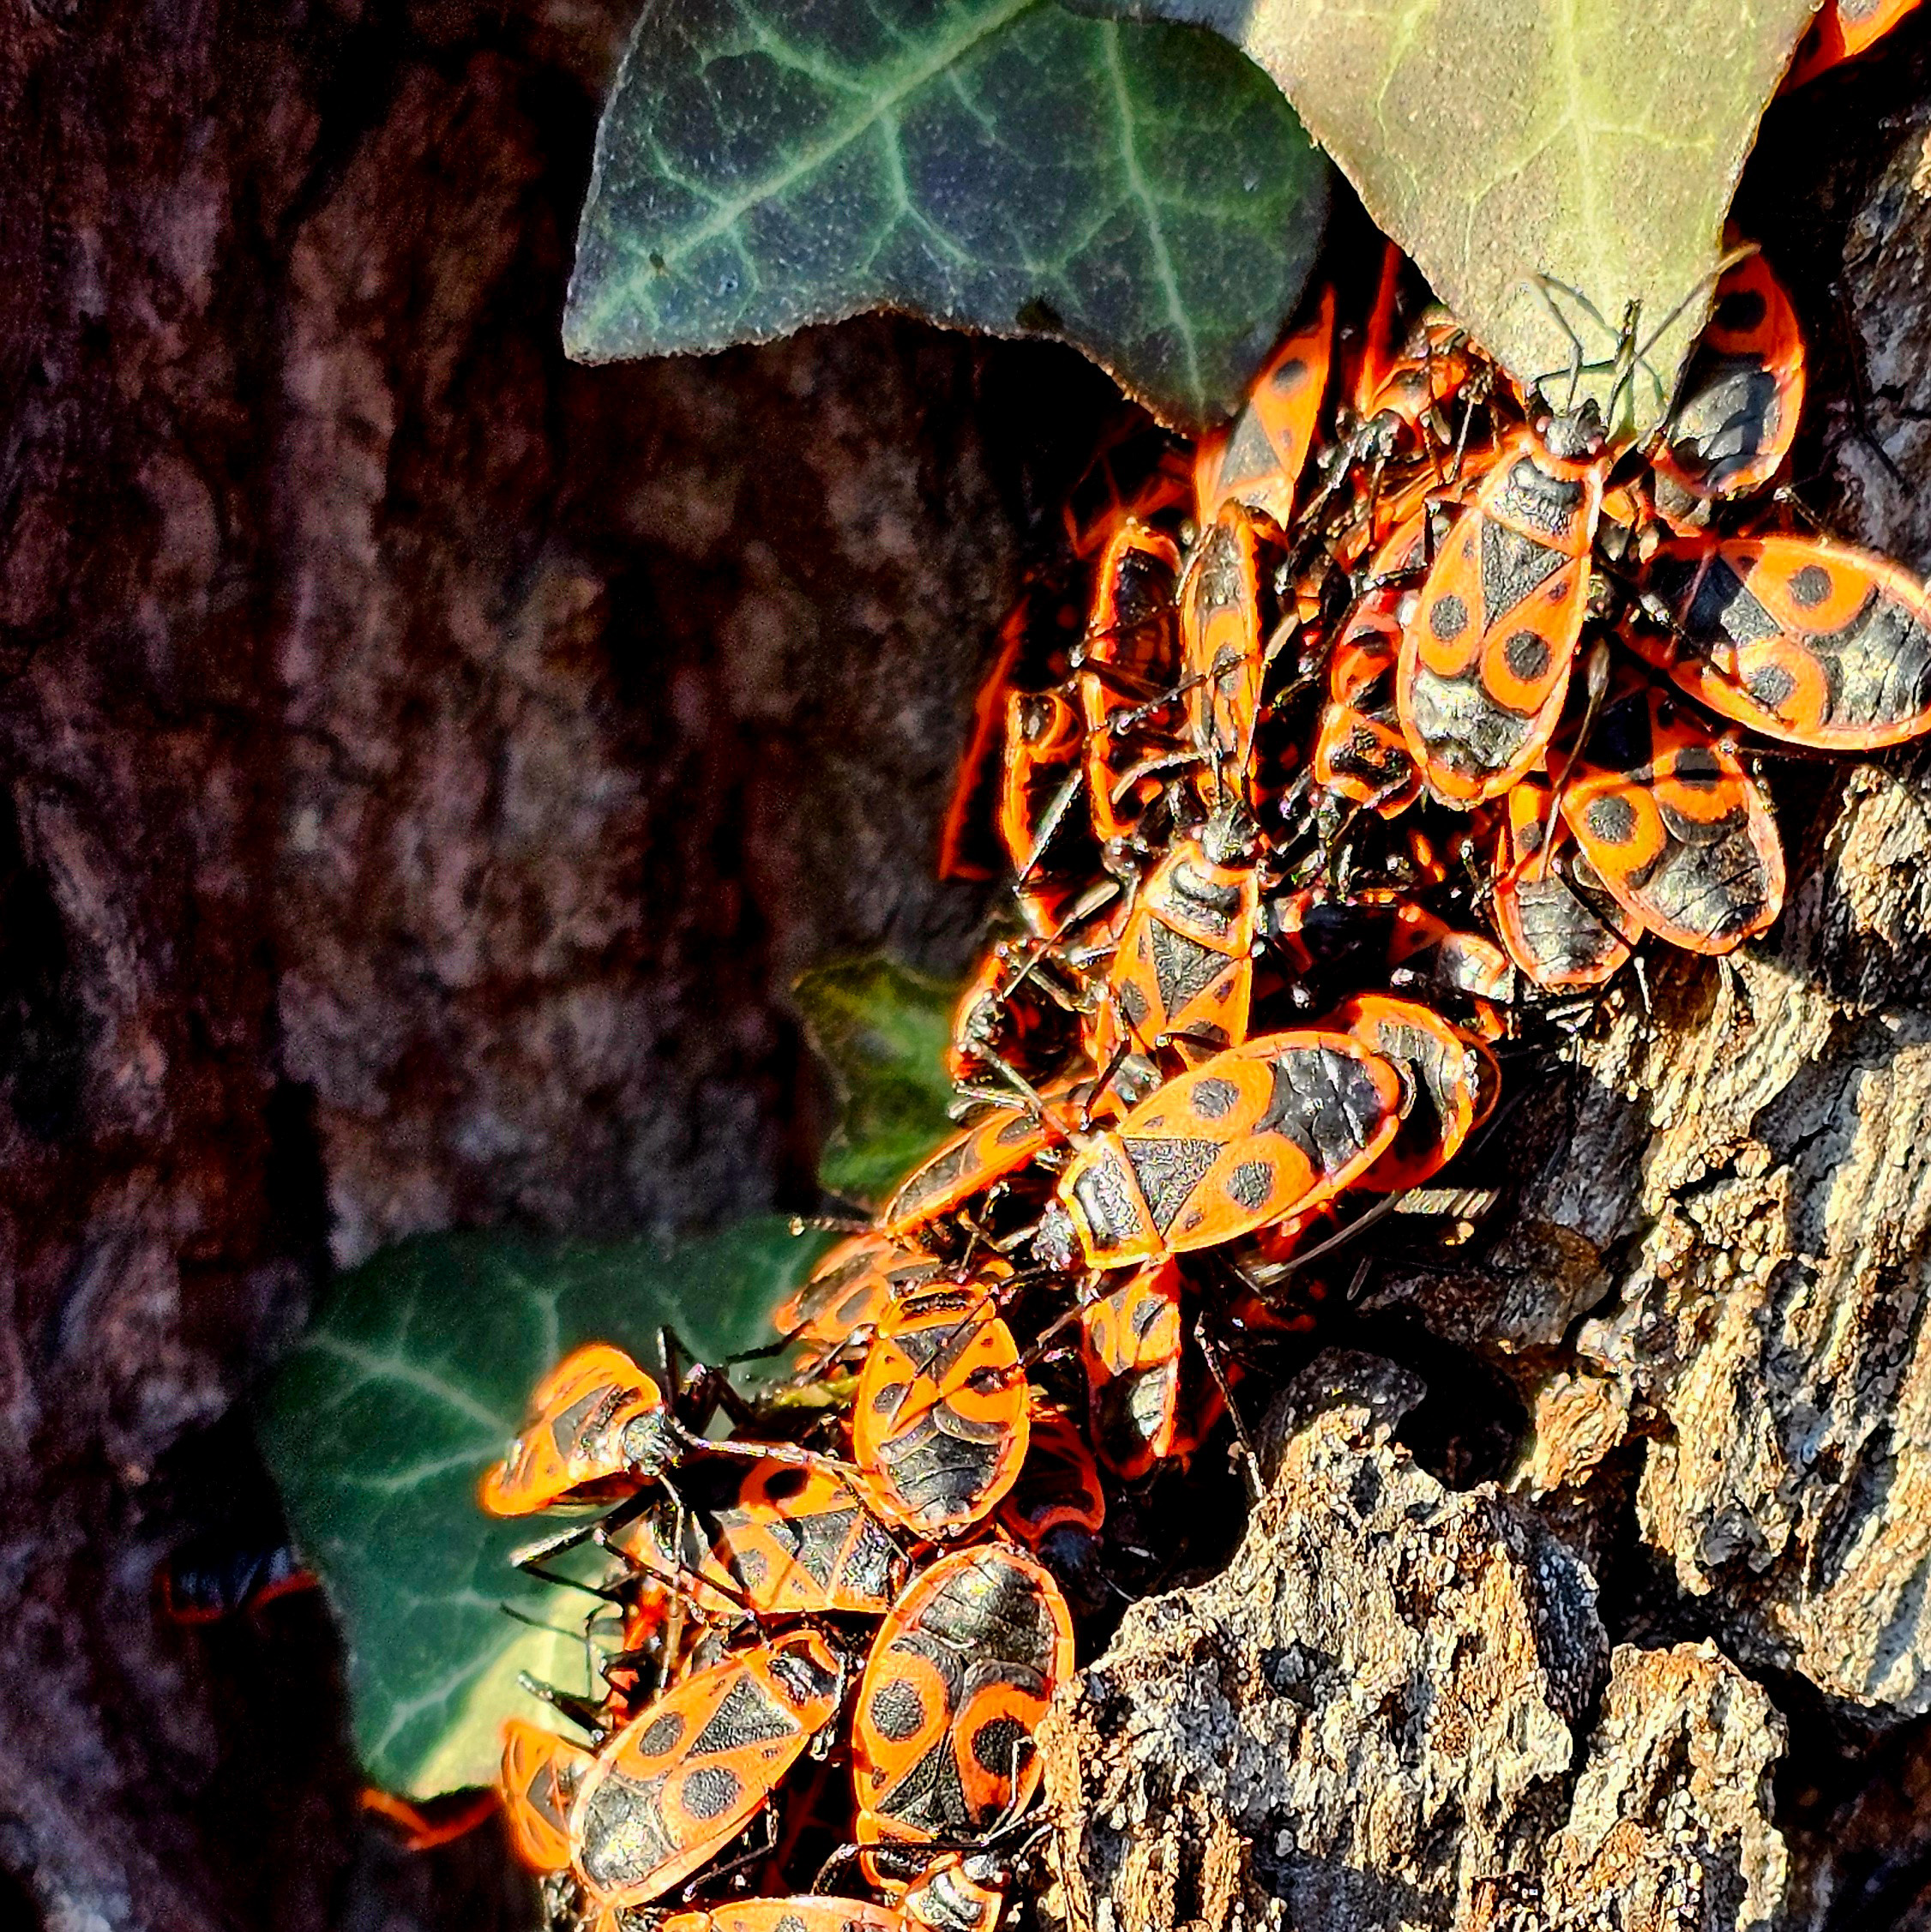 Molti scarabei di fuoco prendono il sole sul tronco dell'albero